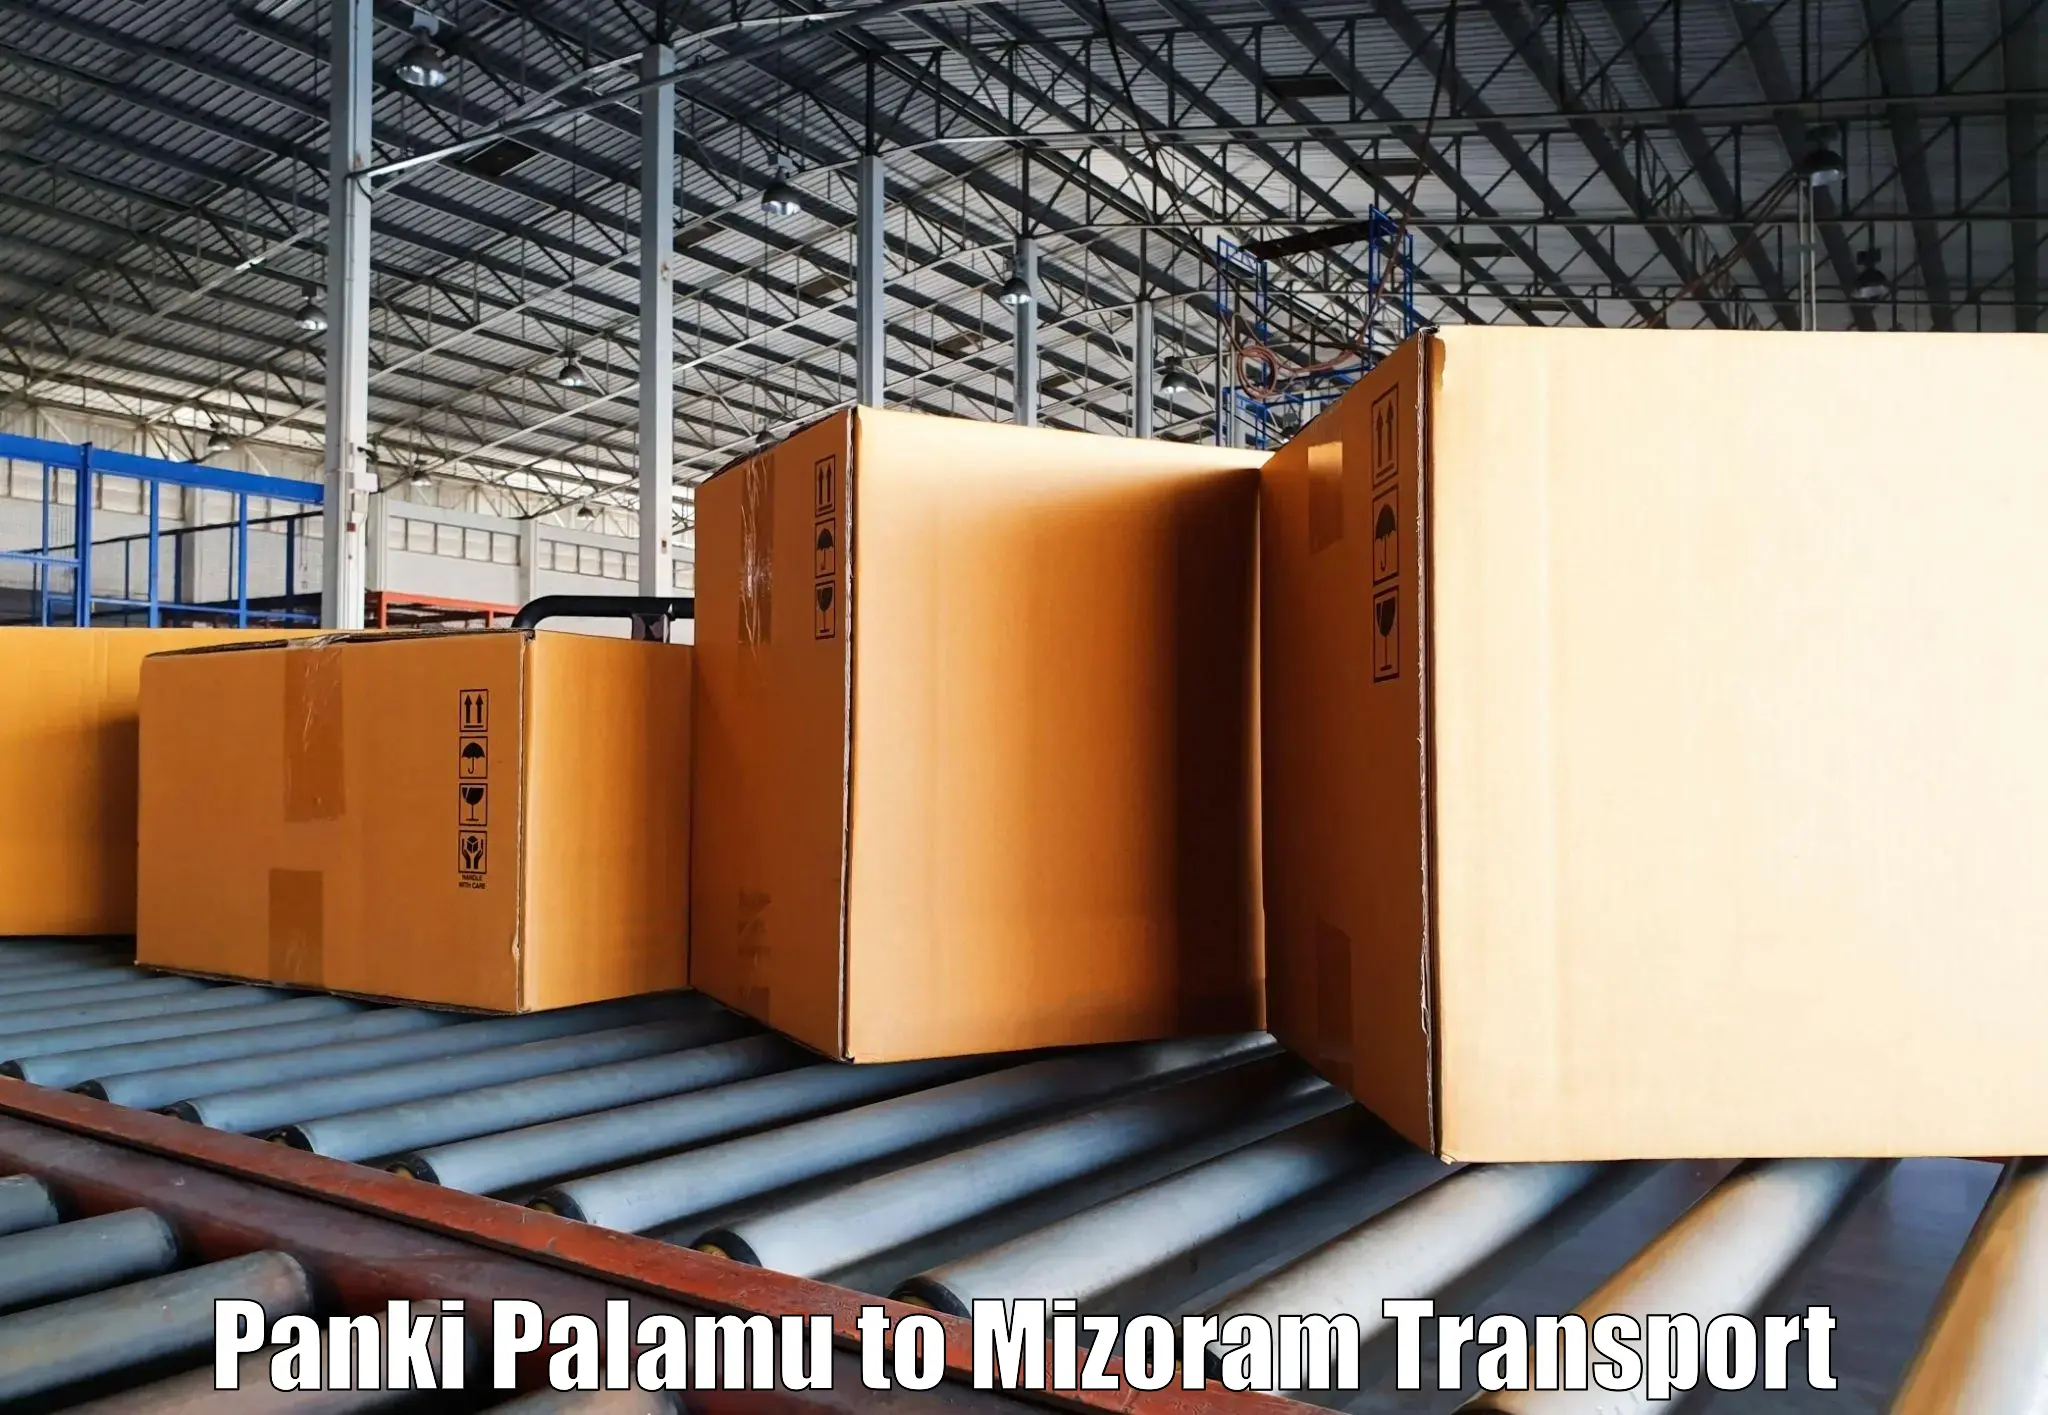 Nearby transport service Panki Palamu to Mizoram